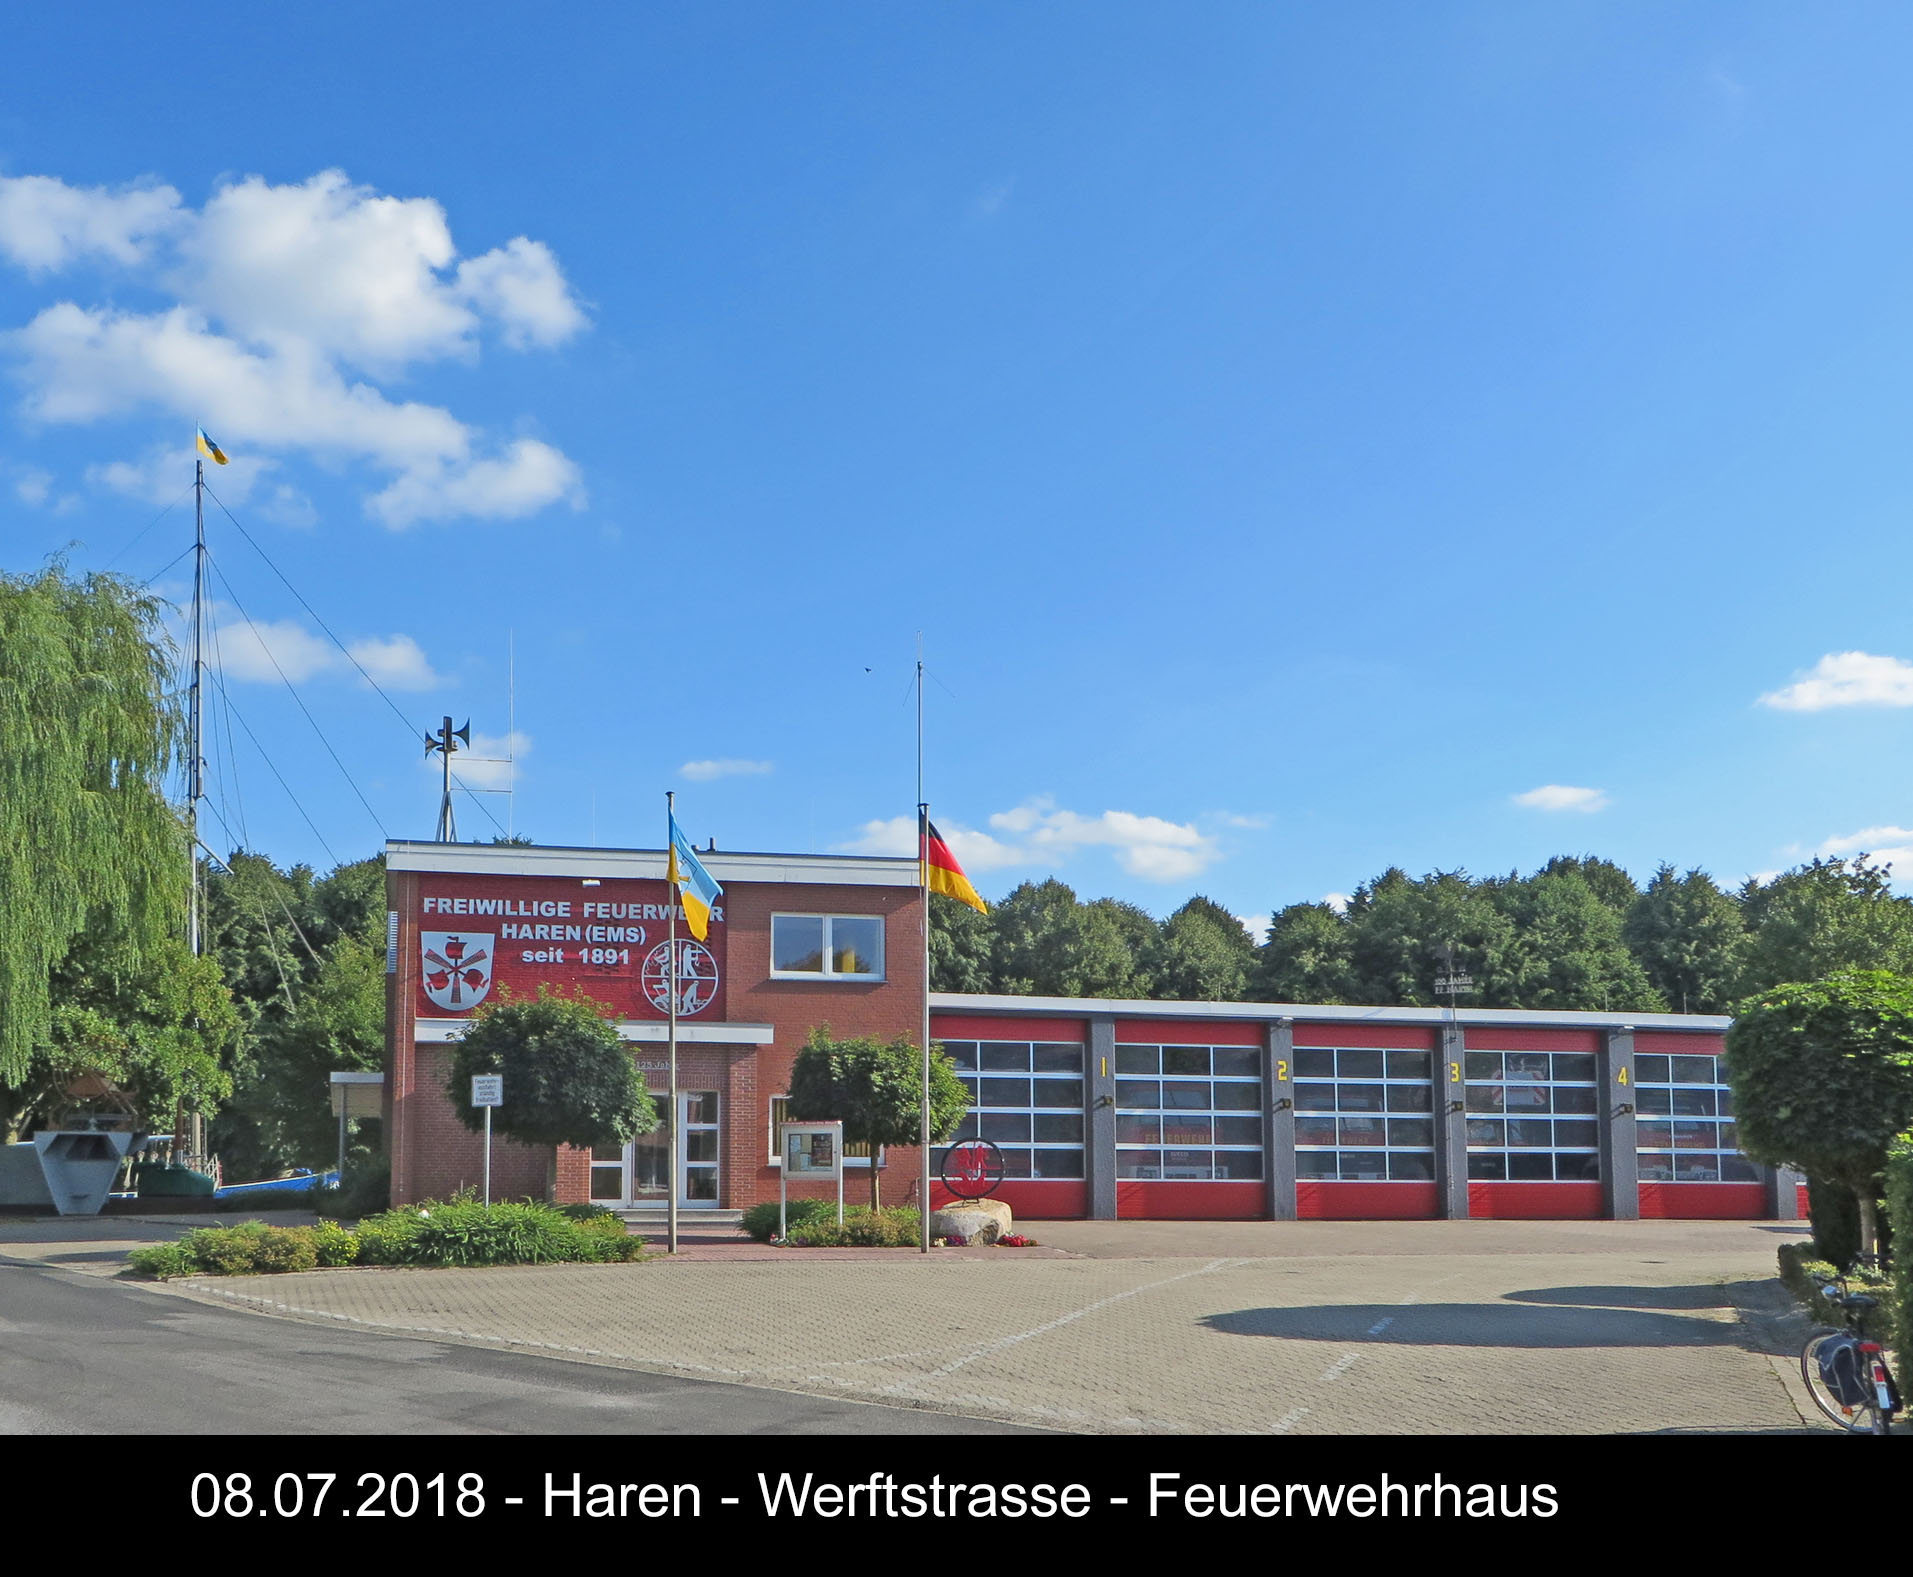 Werftstrasse 2018 Feuerwehrhaus 2